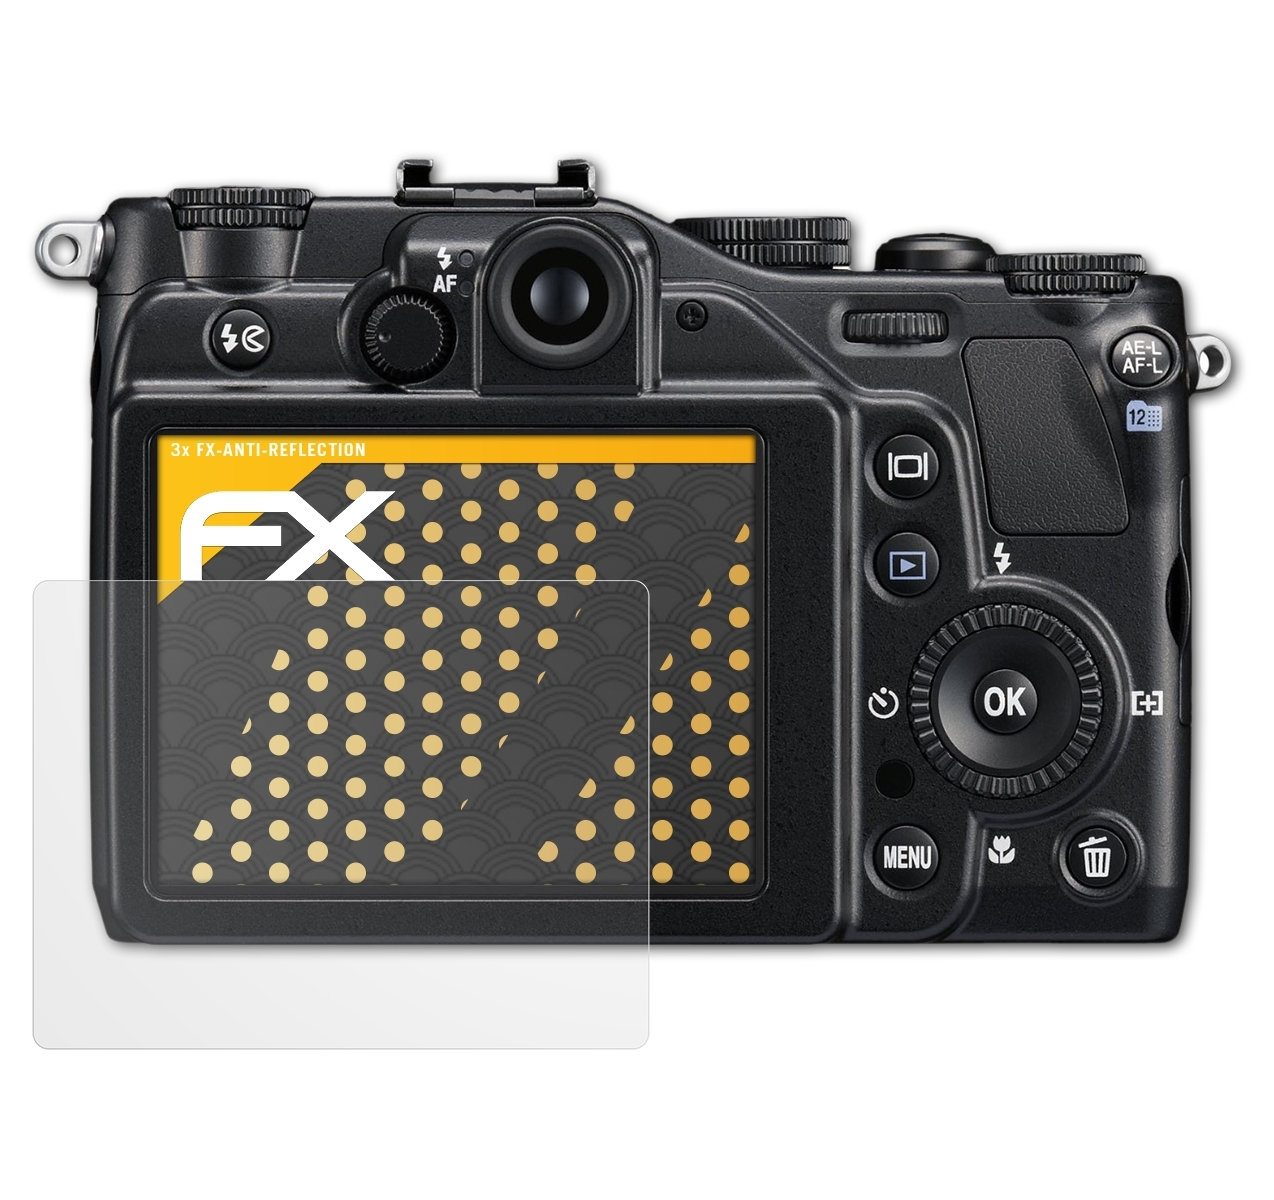 Coolpix 3x Displayschutz(für FX-Antireflex Nikon ATFOLIX P7000)